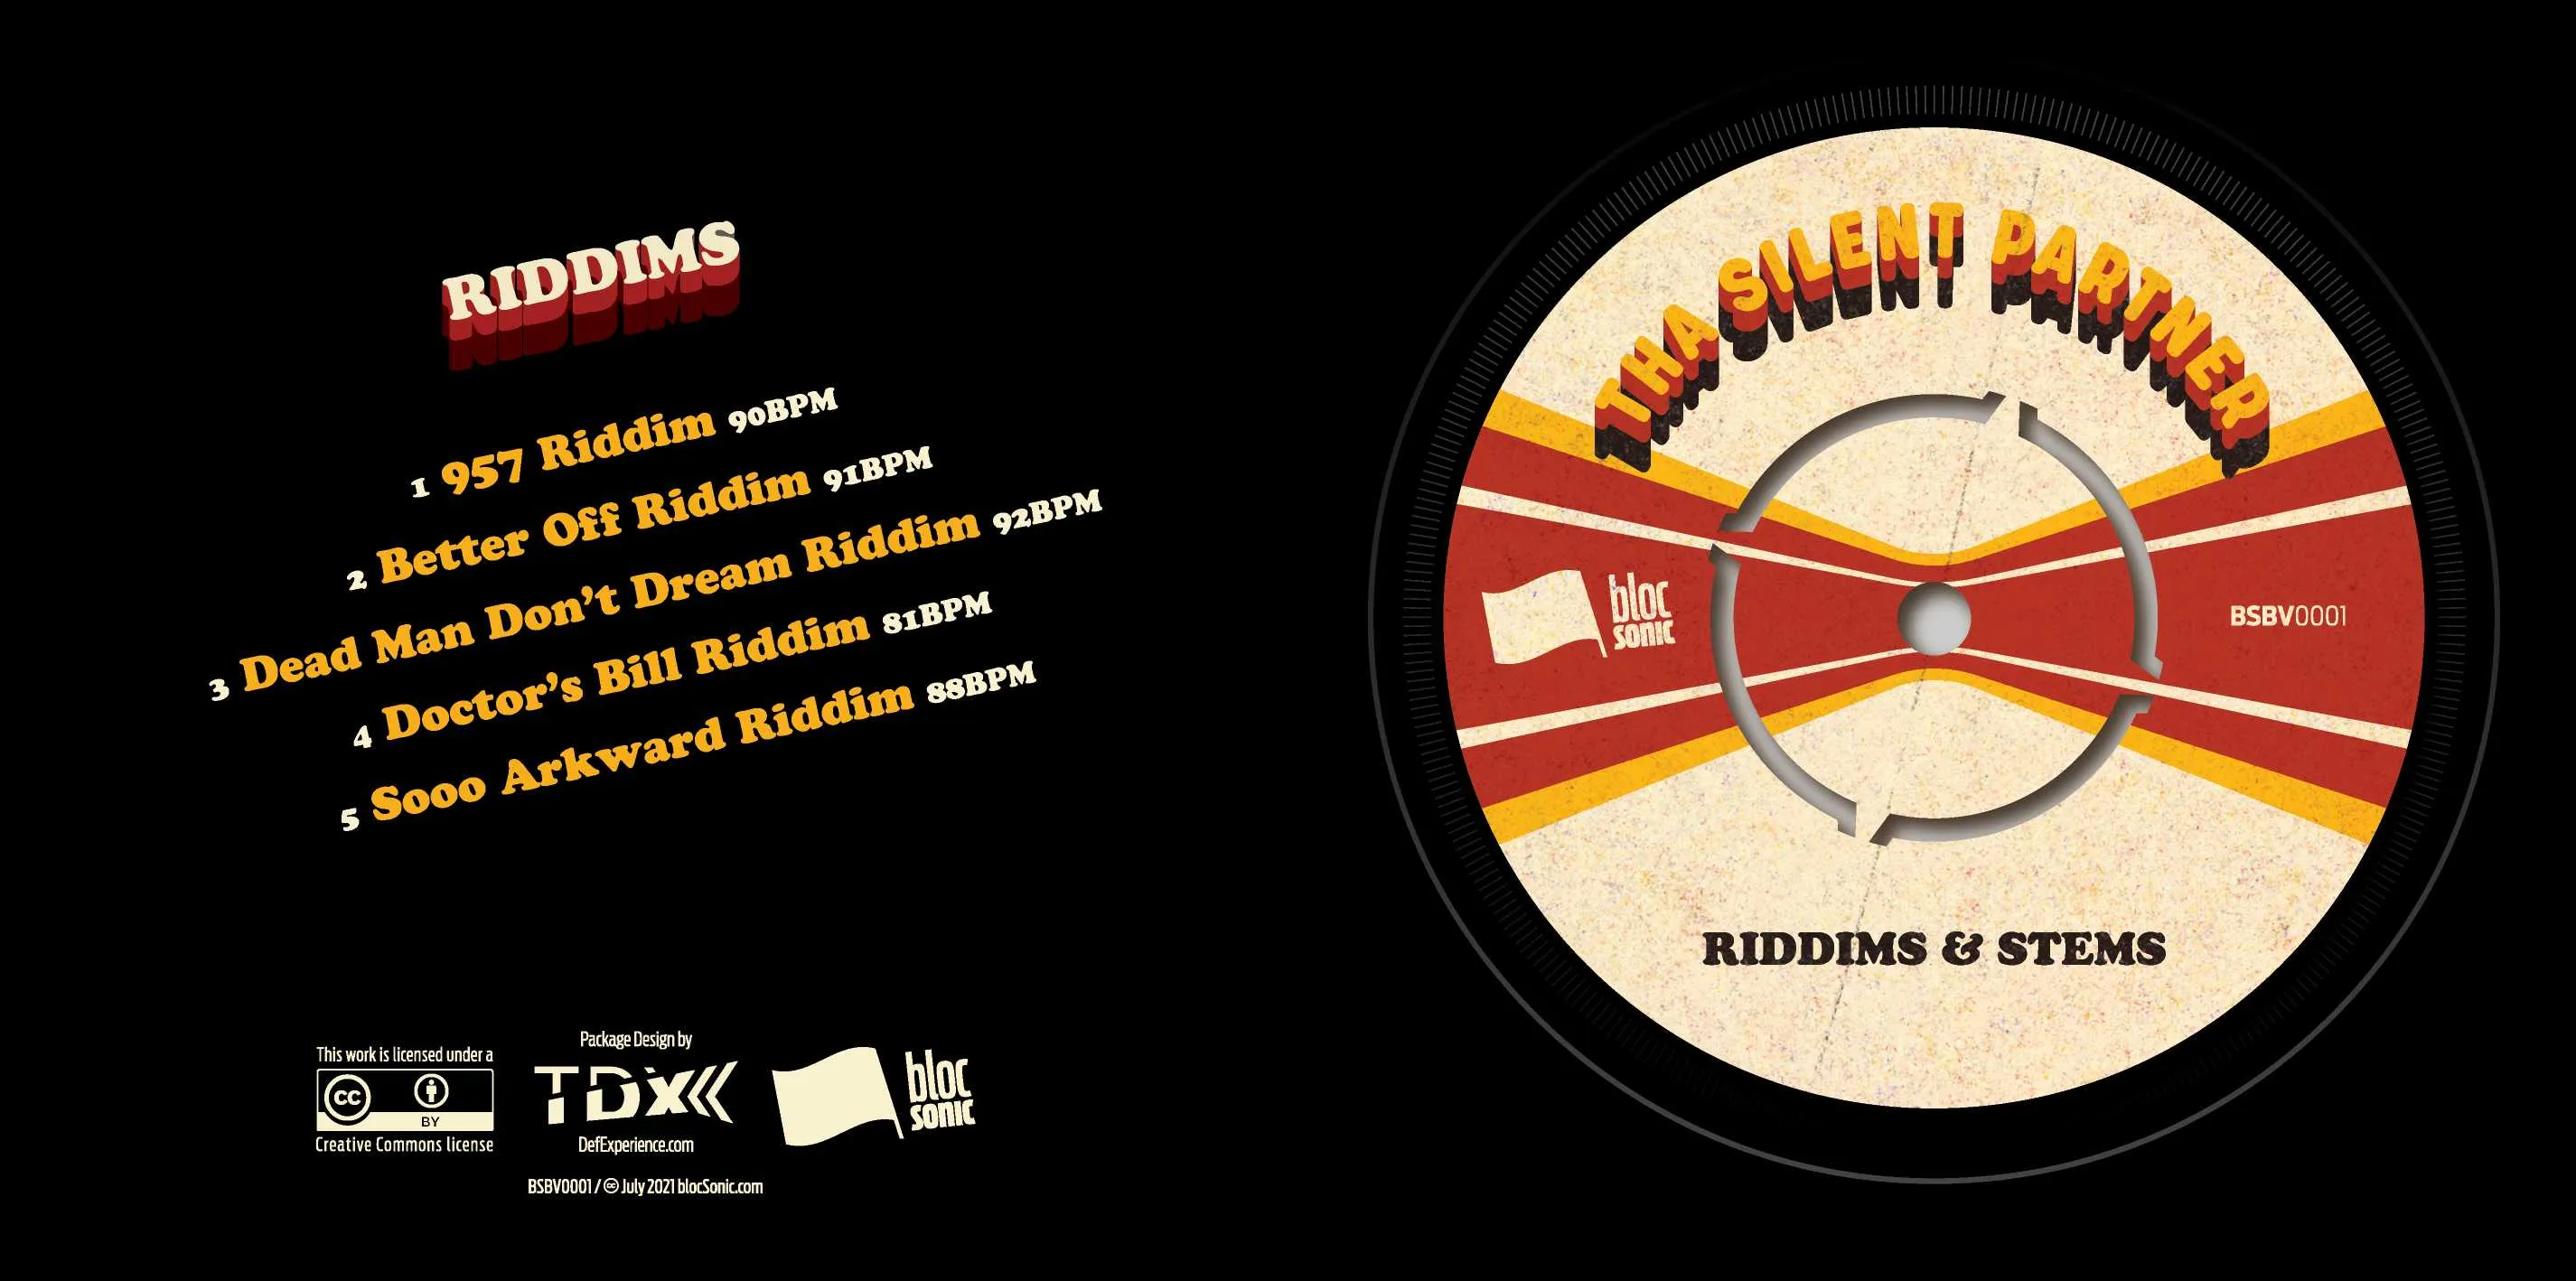 Album insert for “Riddims &amp; Stems” by Tha Silent Partner